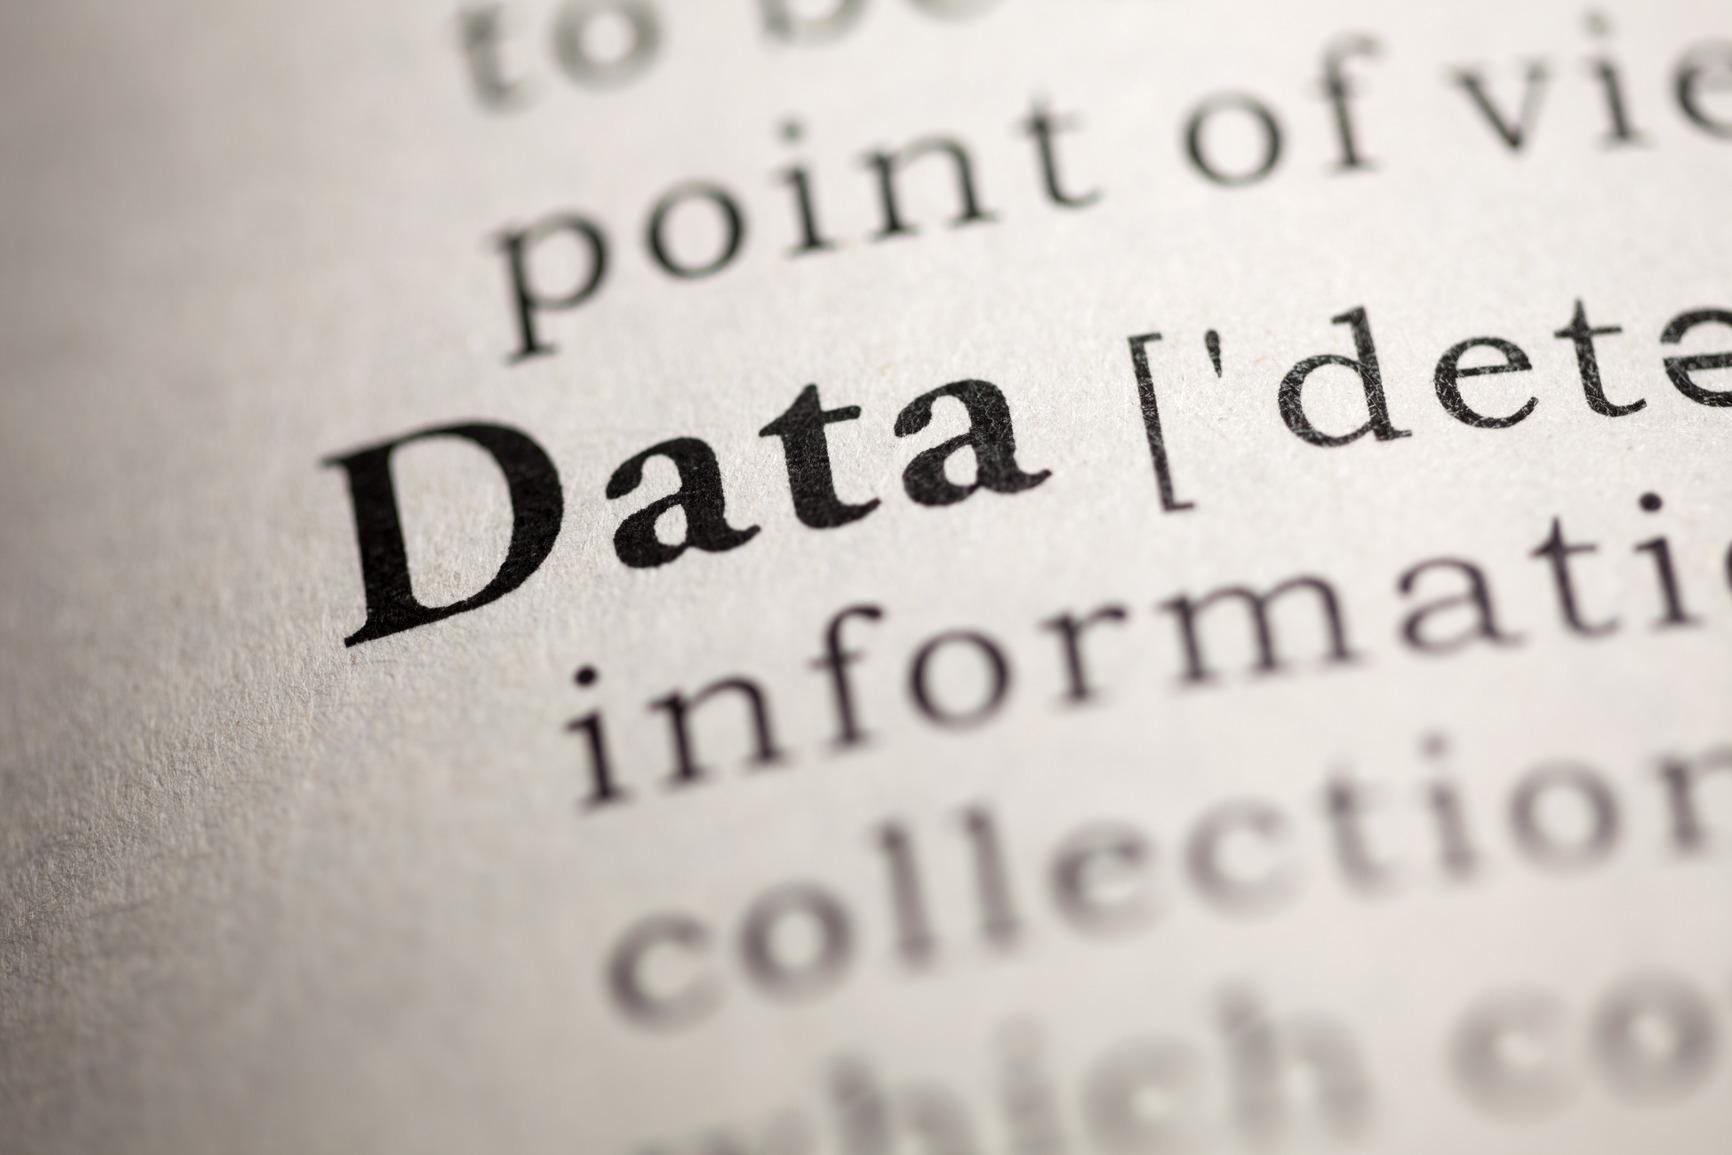 Foto a diccionario en la palabra "Data"